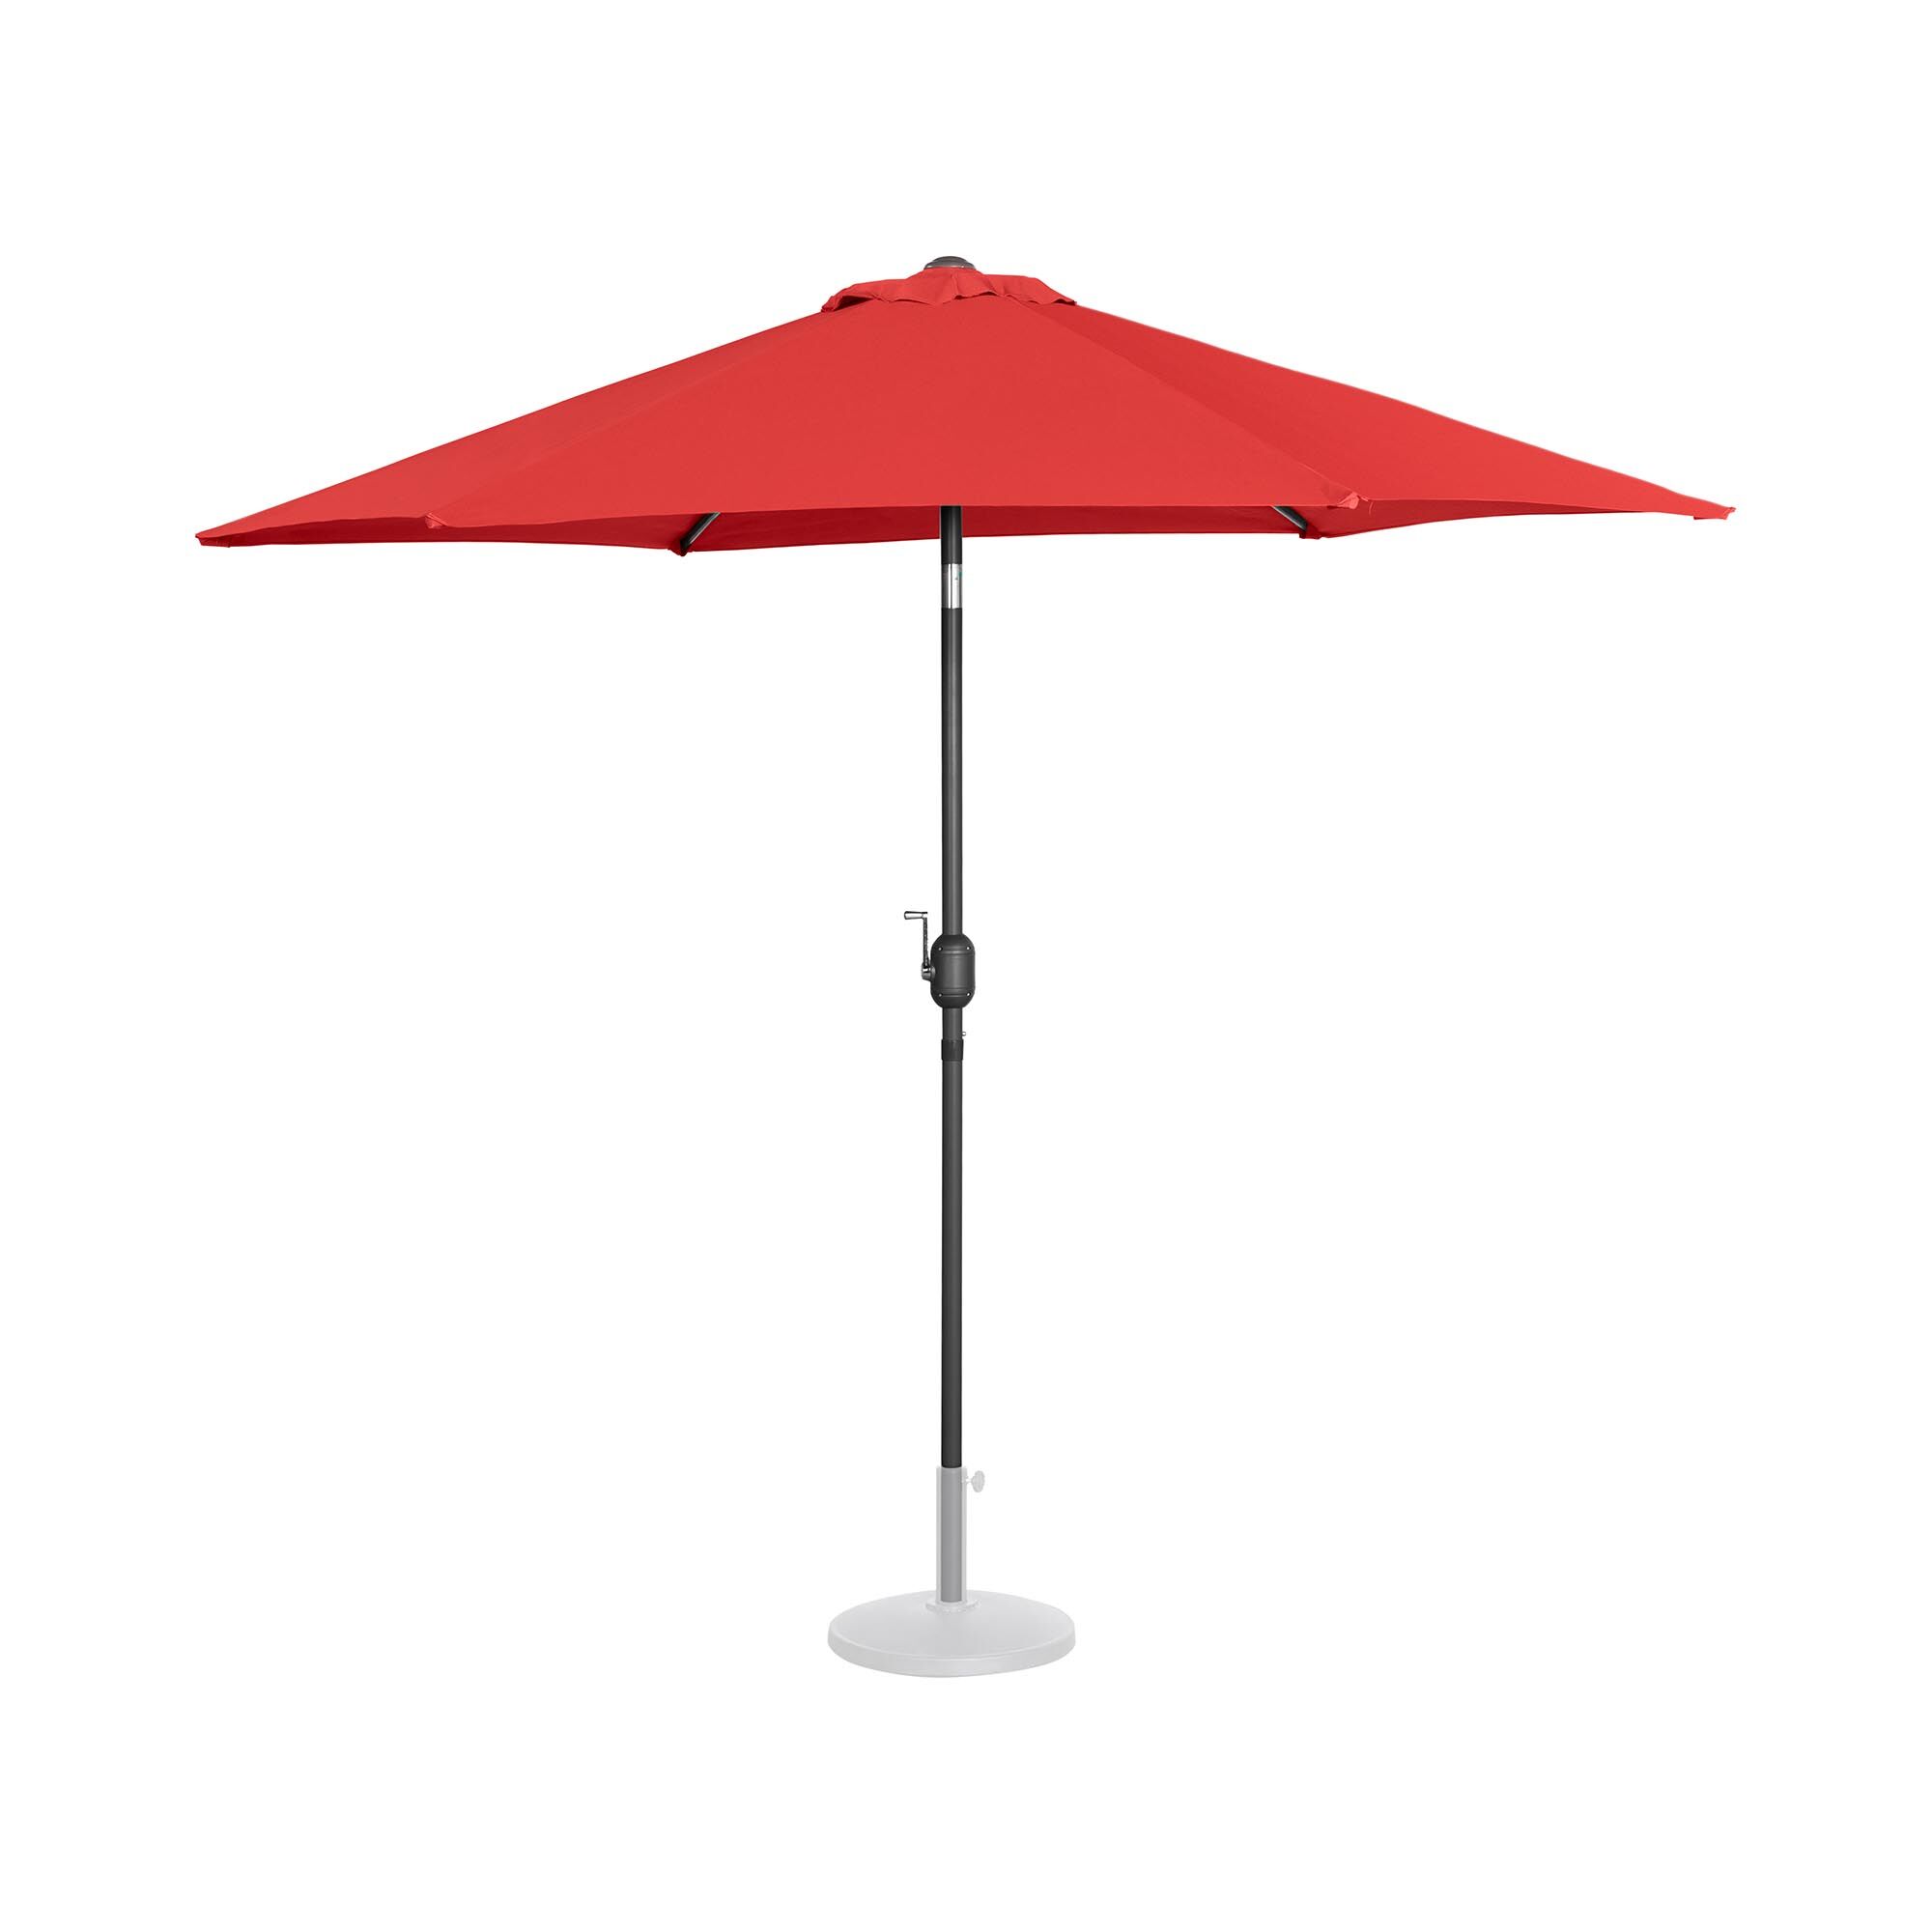 Uniprodo Large Outdoor Umbrella - red - hexagonal - Ø 270 cm - tiltable